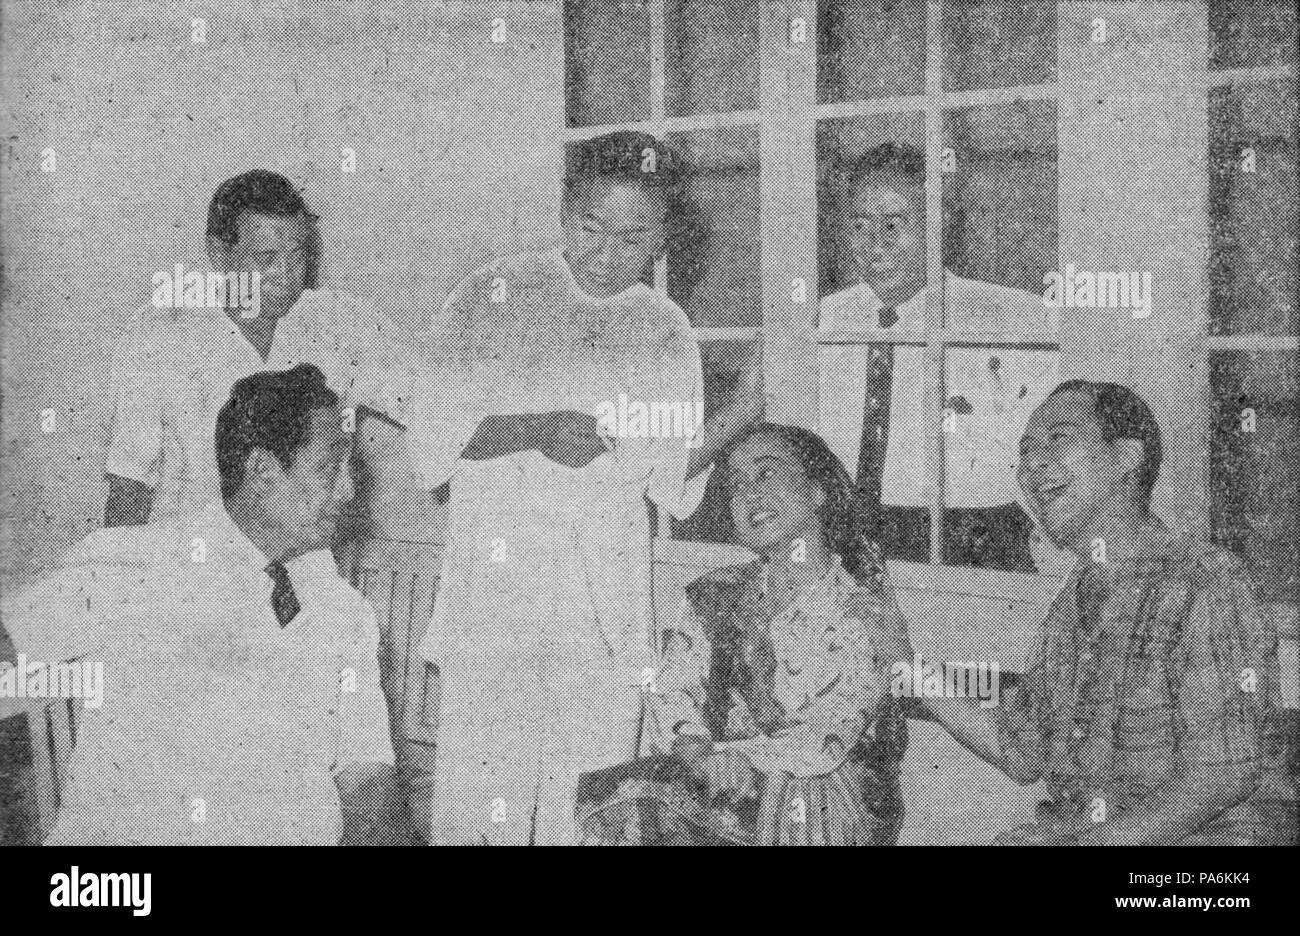 62 Dewi Dja with Astaman, Tan Tjeng Bok, Rd Ismail, and Ali Yugo, Dr Samsi, p15 Stock Photo